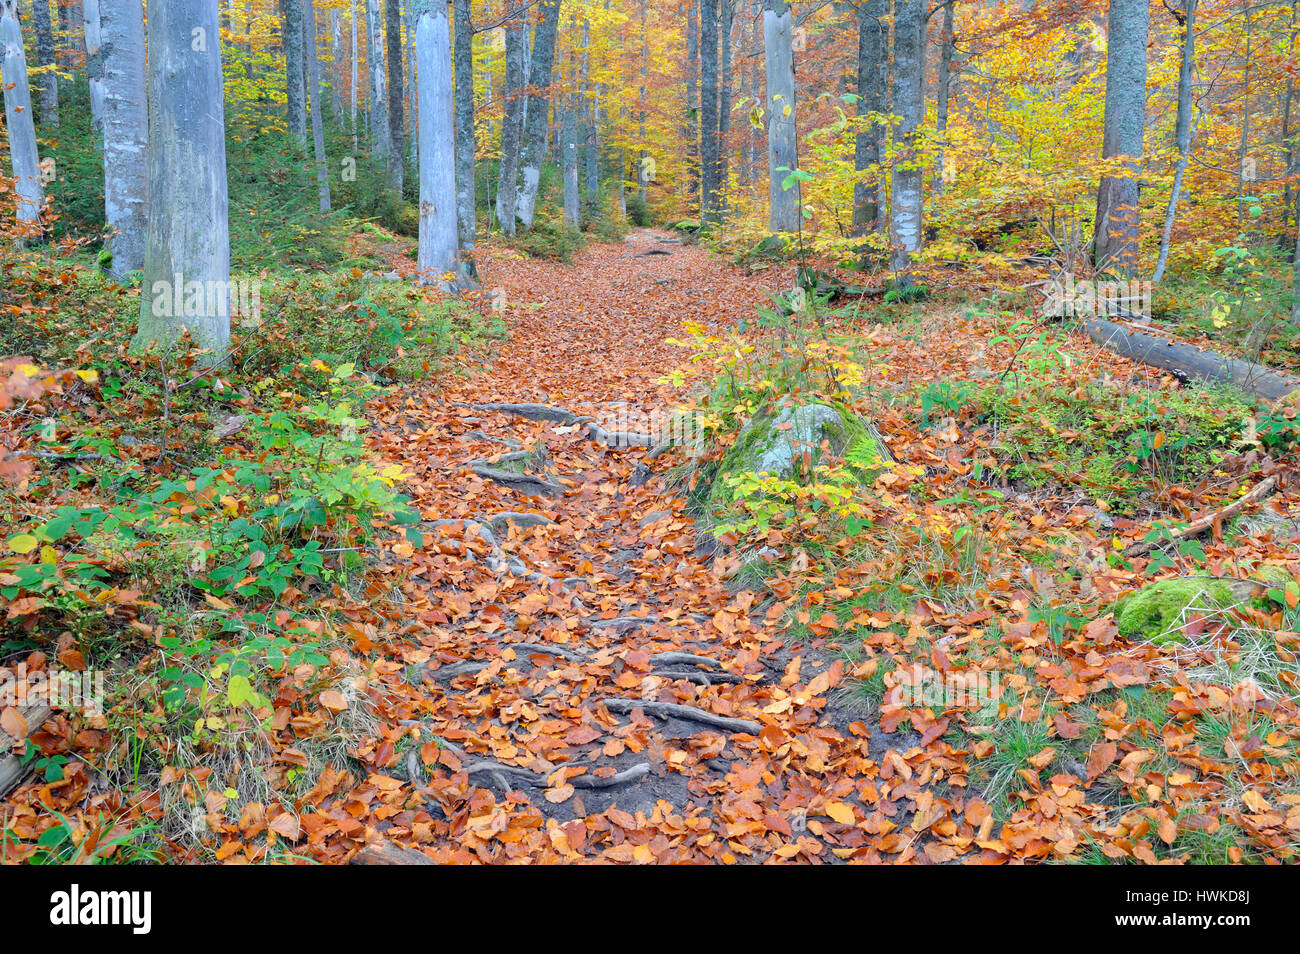 Foresta di faggio in autunno, ottobre, Parco Nazionale della Foresta Bavarese, Germania Foto Stock